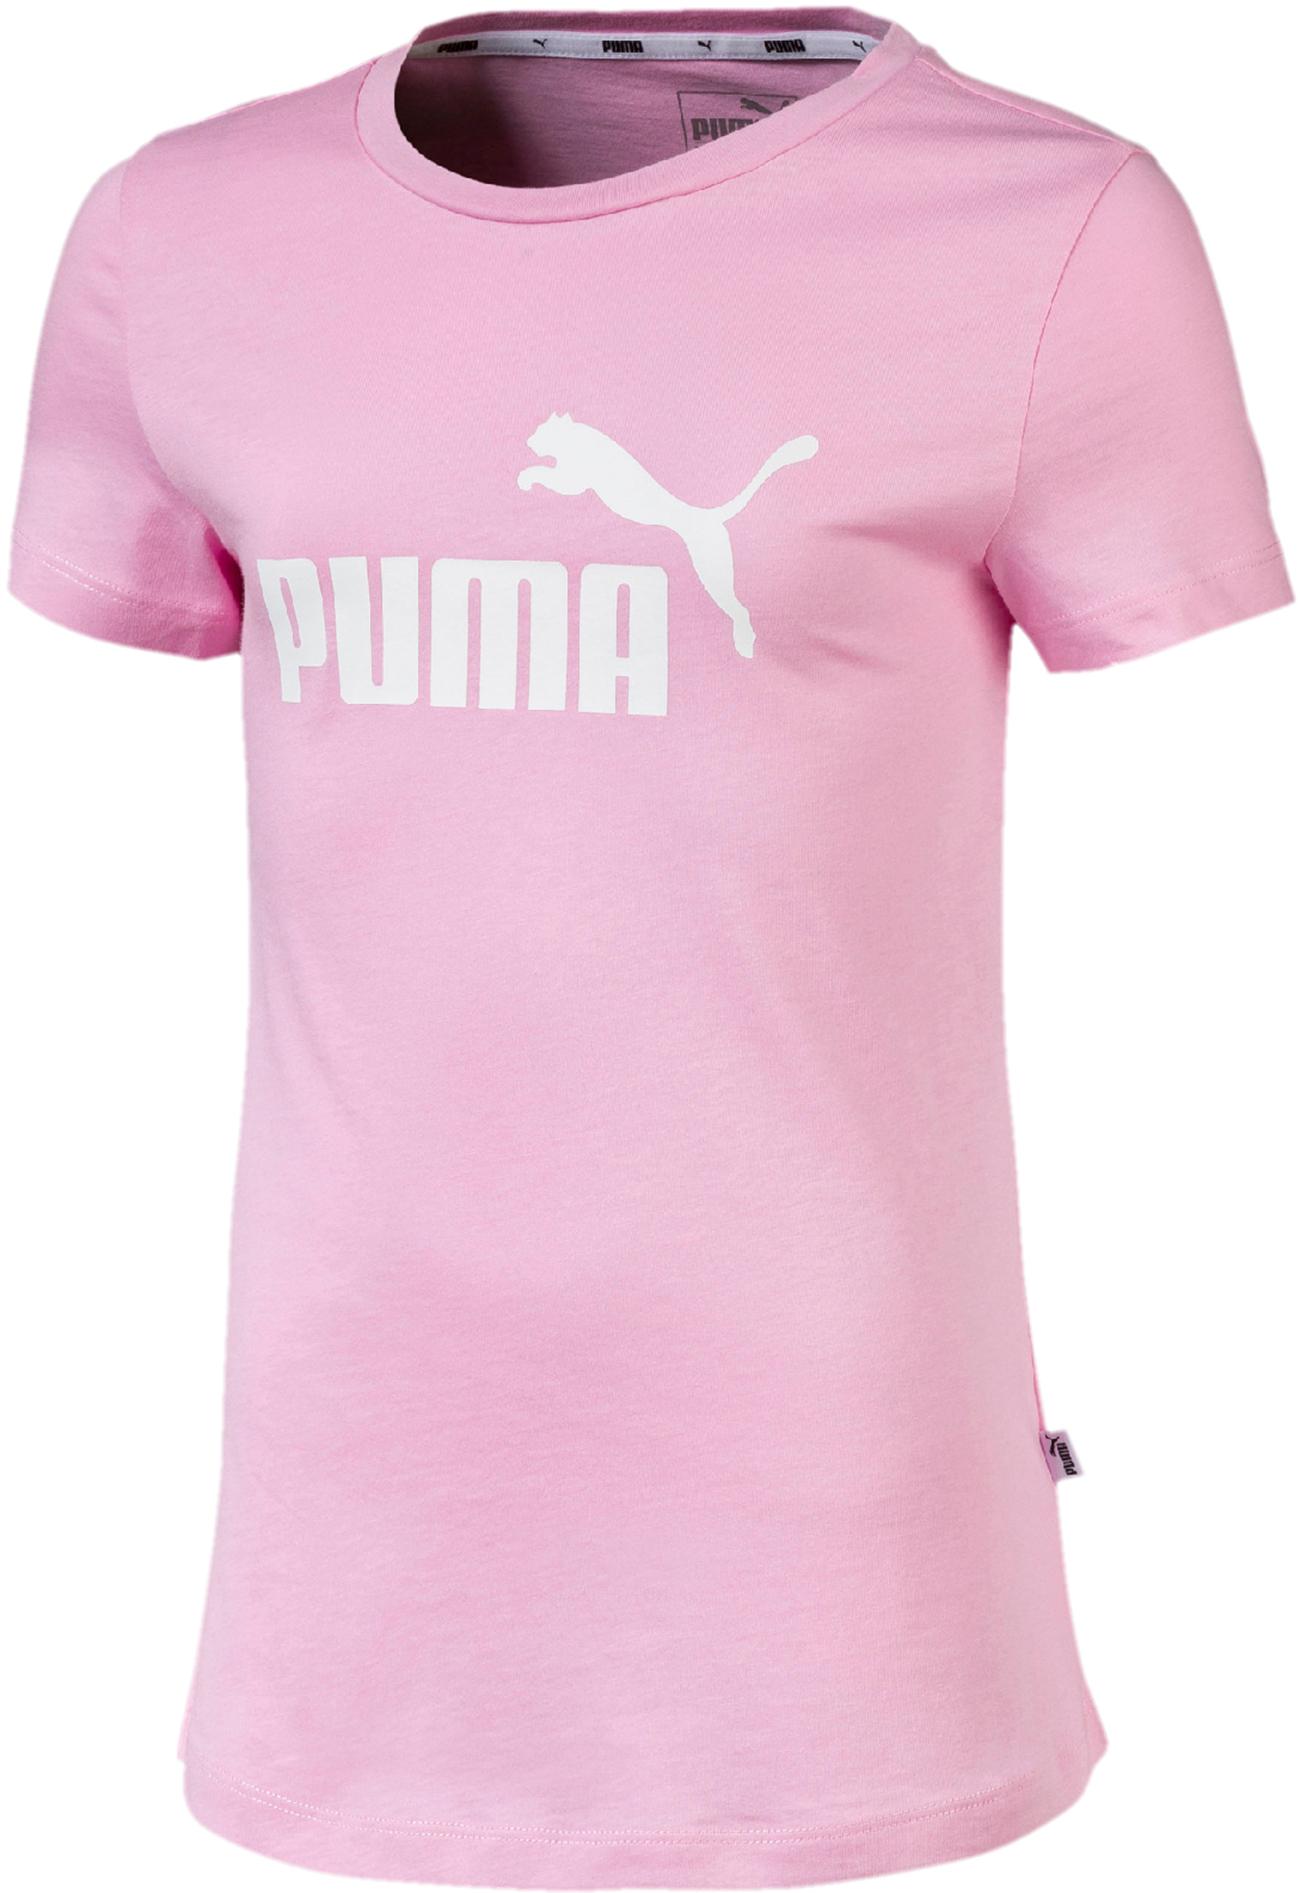 puma kinder t shirt